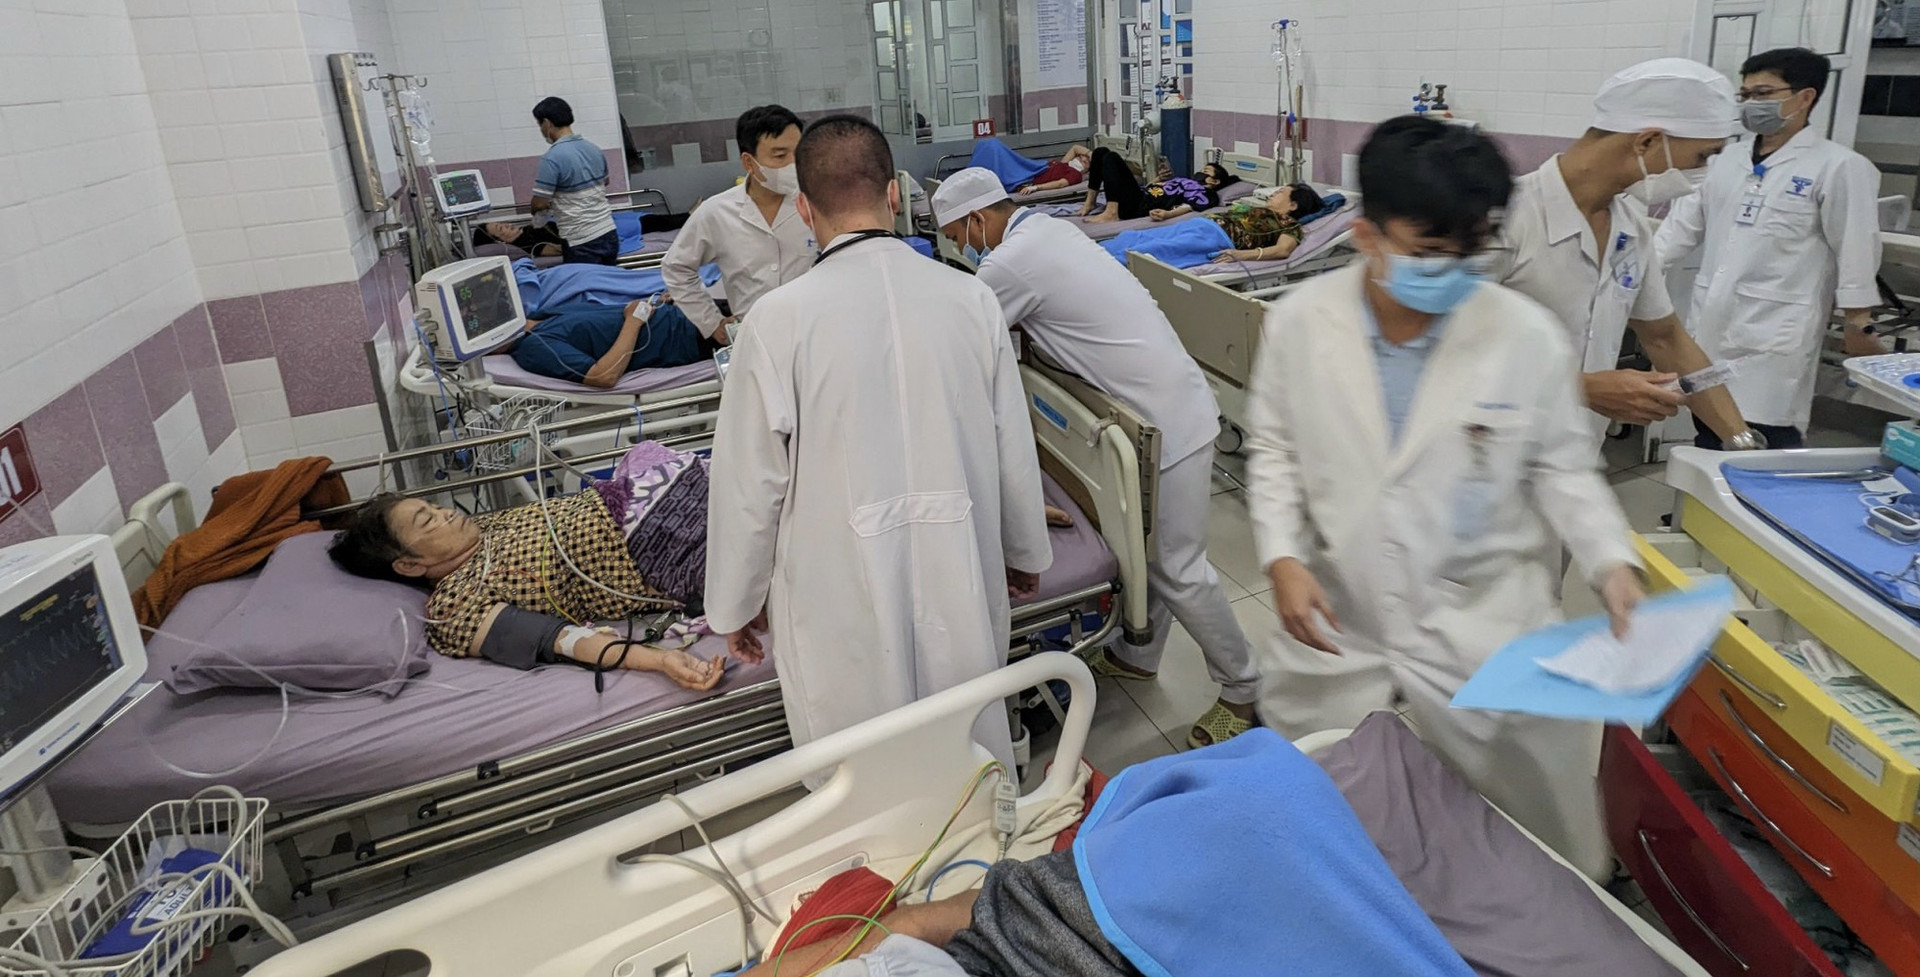 Sau khi ăn bánh mì, nhiều người ở Sóc Trăng nhập viện - Ảnh: Bệnh viện Đa khoa Hoàng Tuấn cung cấp